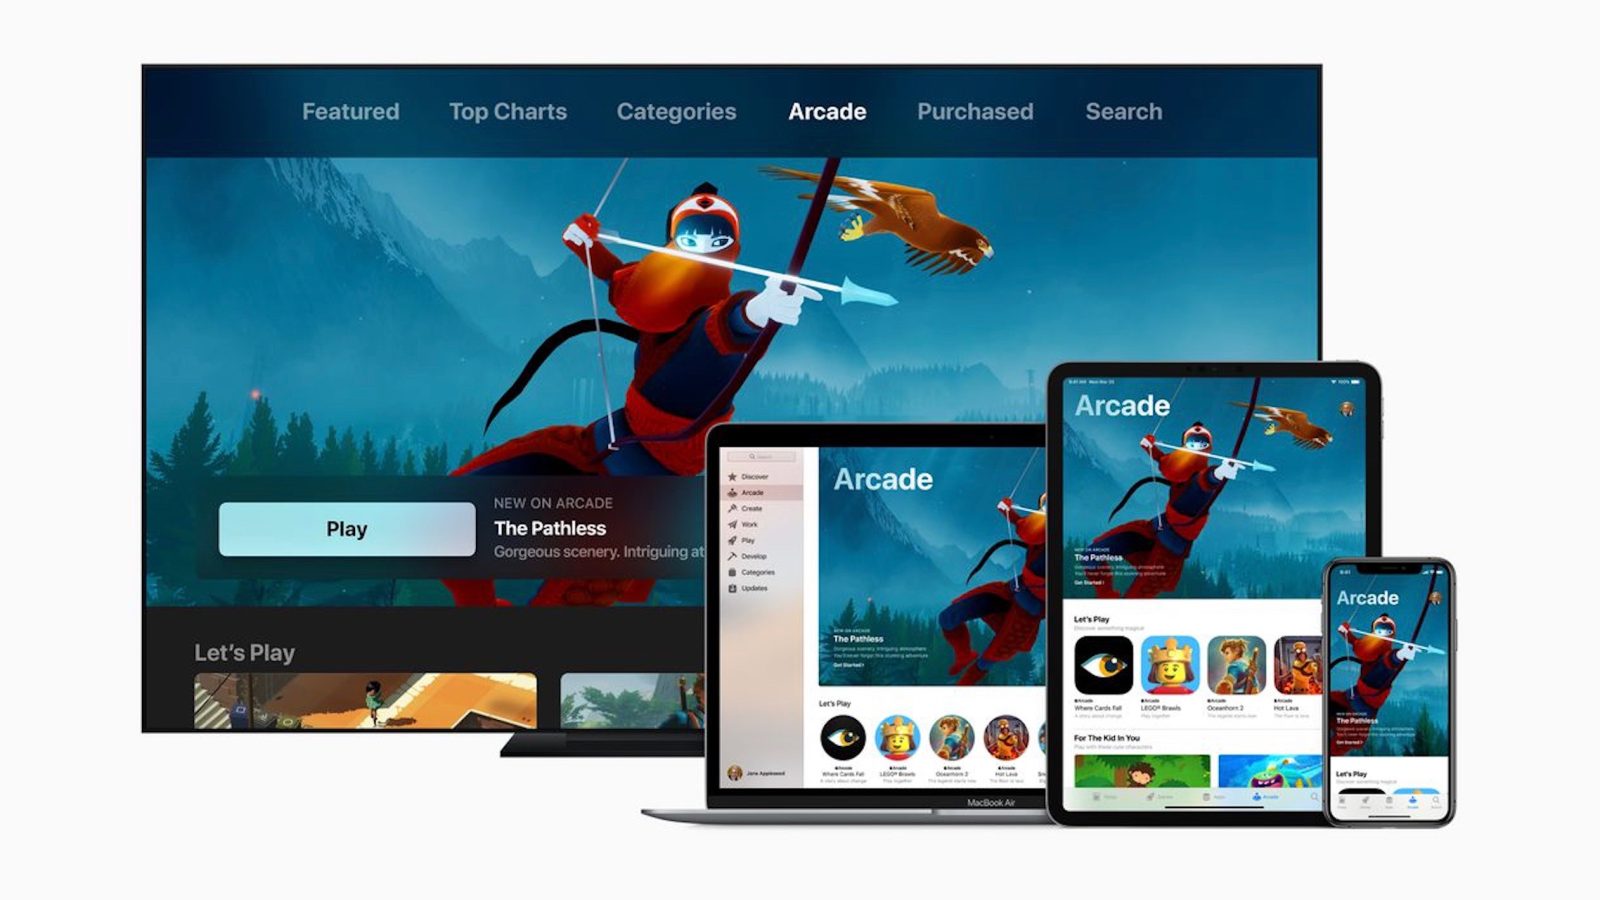 اپل وعده داده که 100 بازی اختصاصی در سرویس پخش بازی Apple Arcade ارائه خواهد شد.